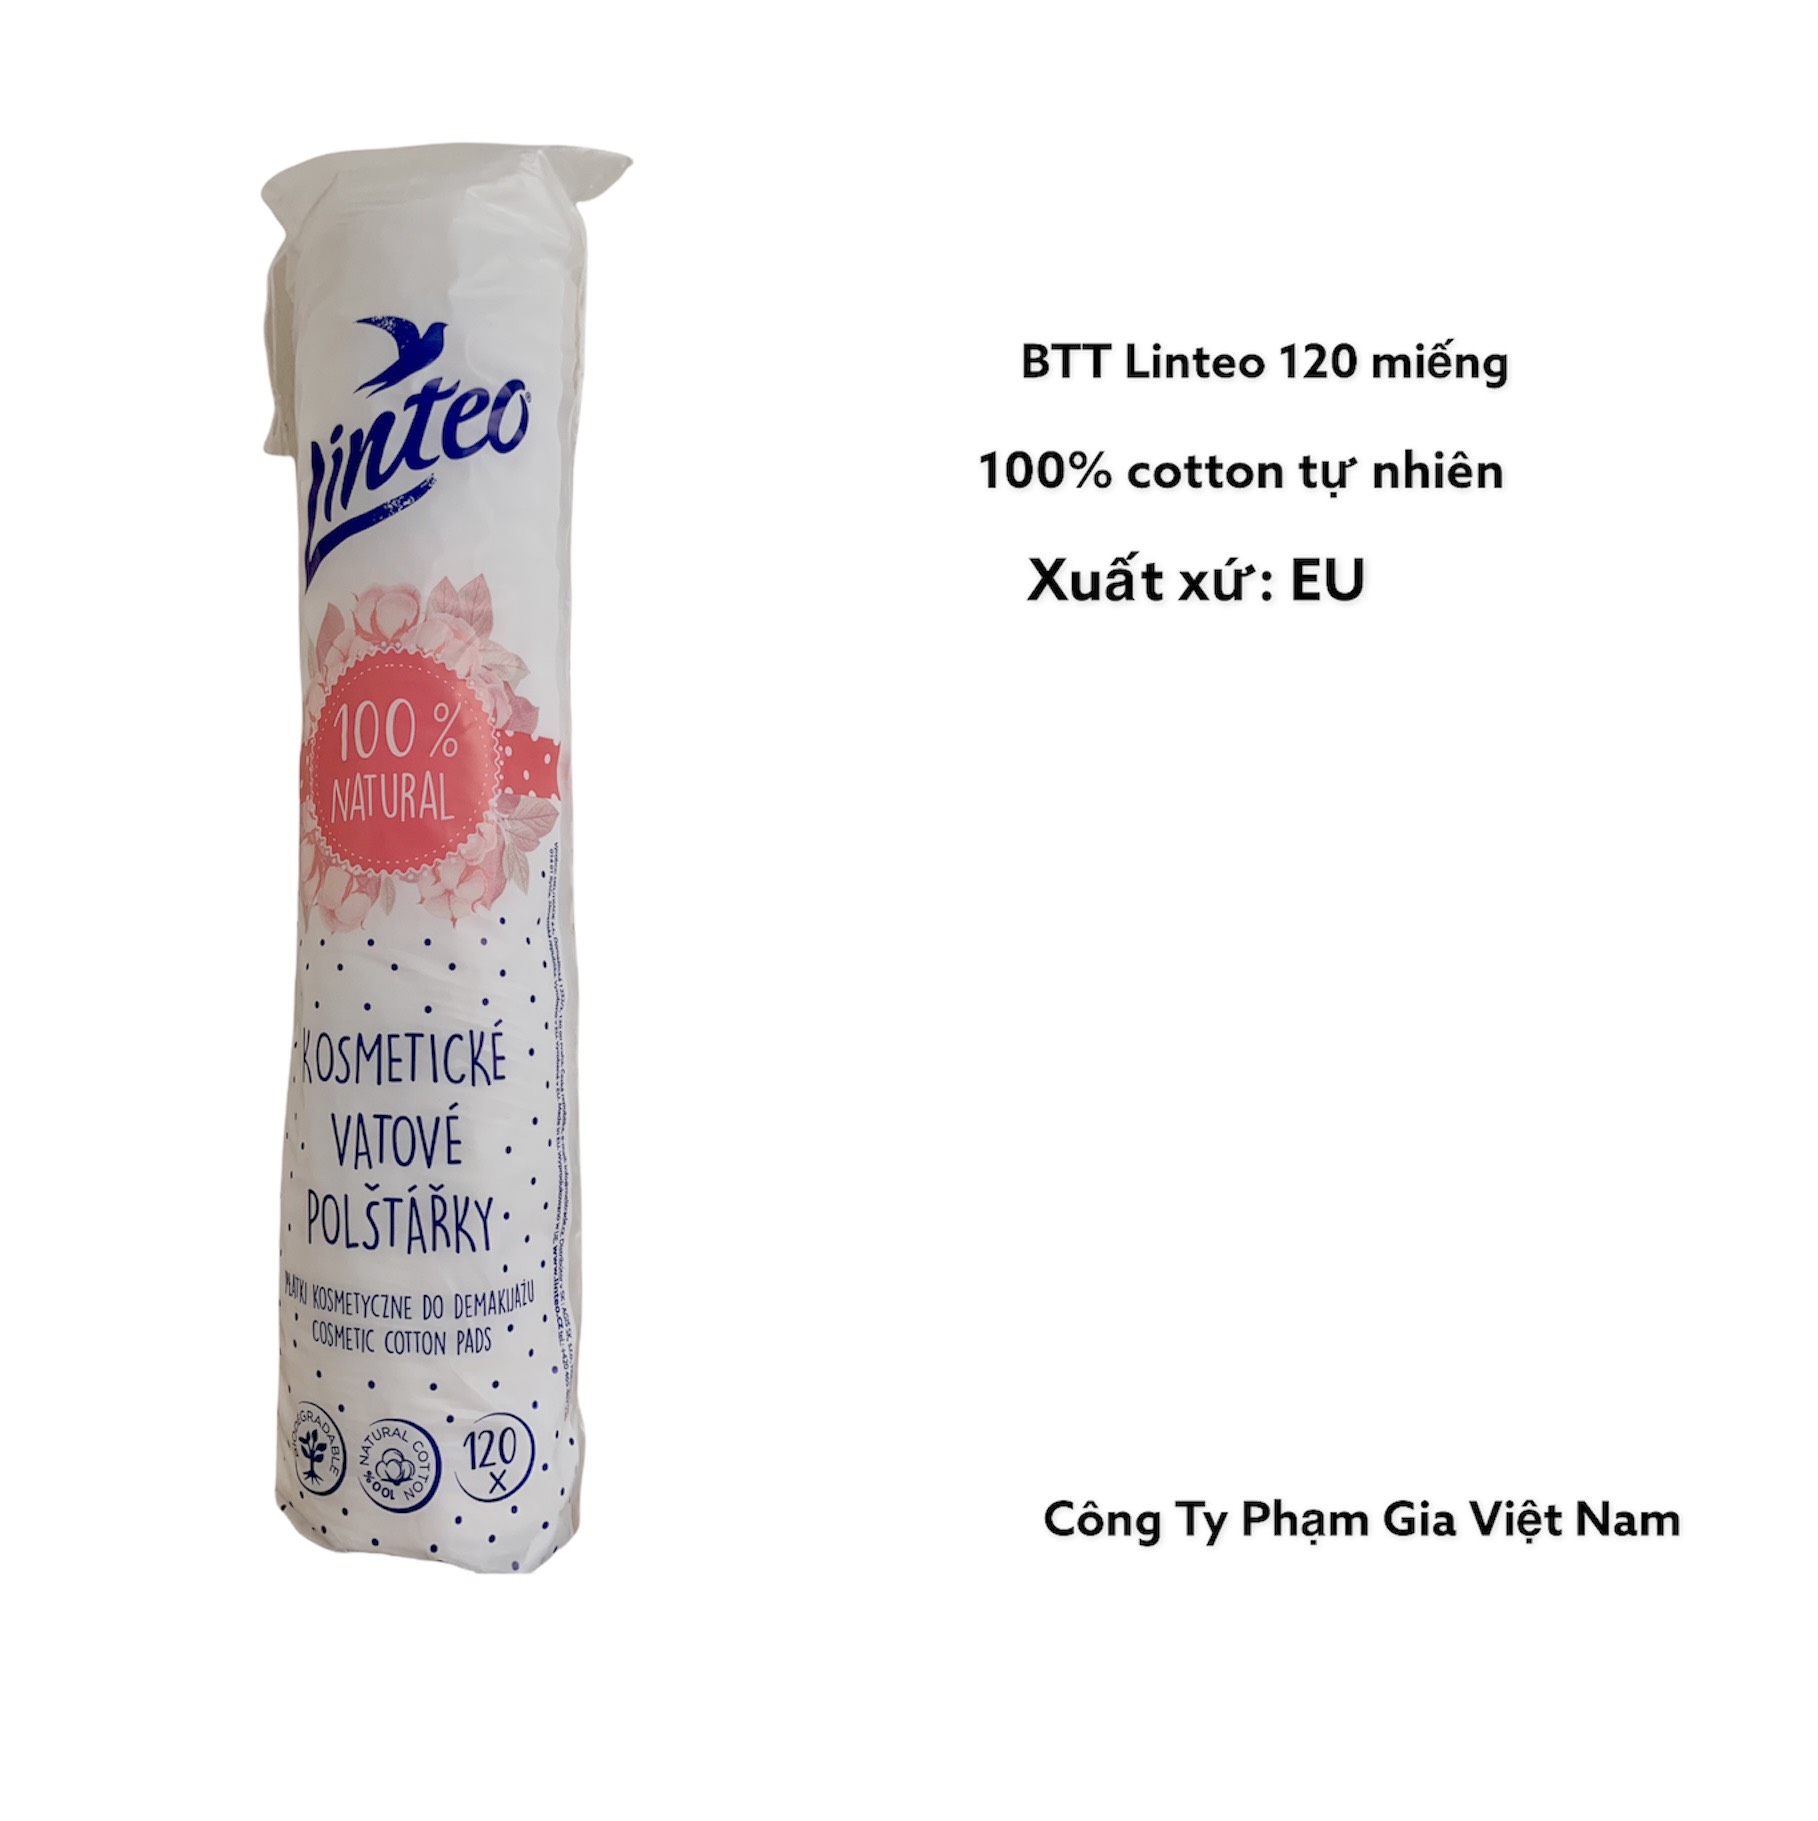 [CHÍNH HÃNG] Bông Tẩy Trang Linteo 120 Miếng|100% cotton|EU